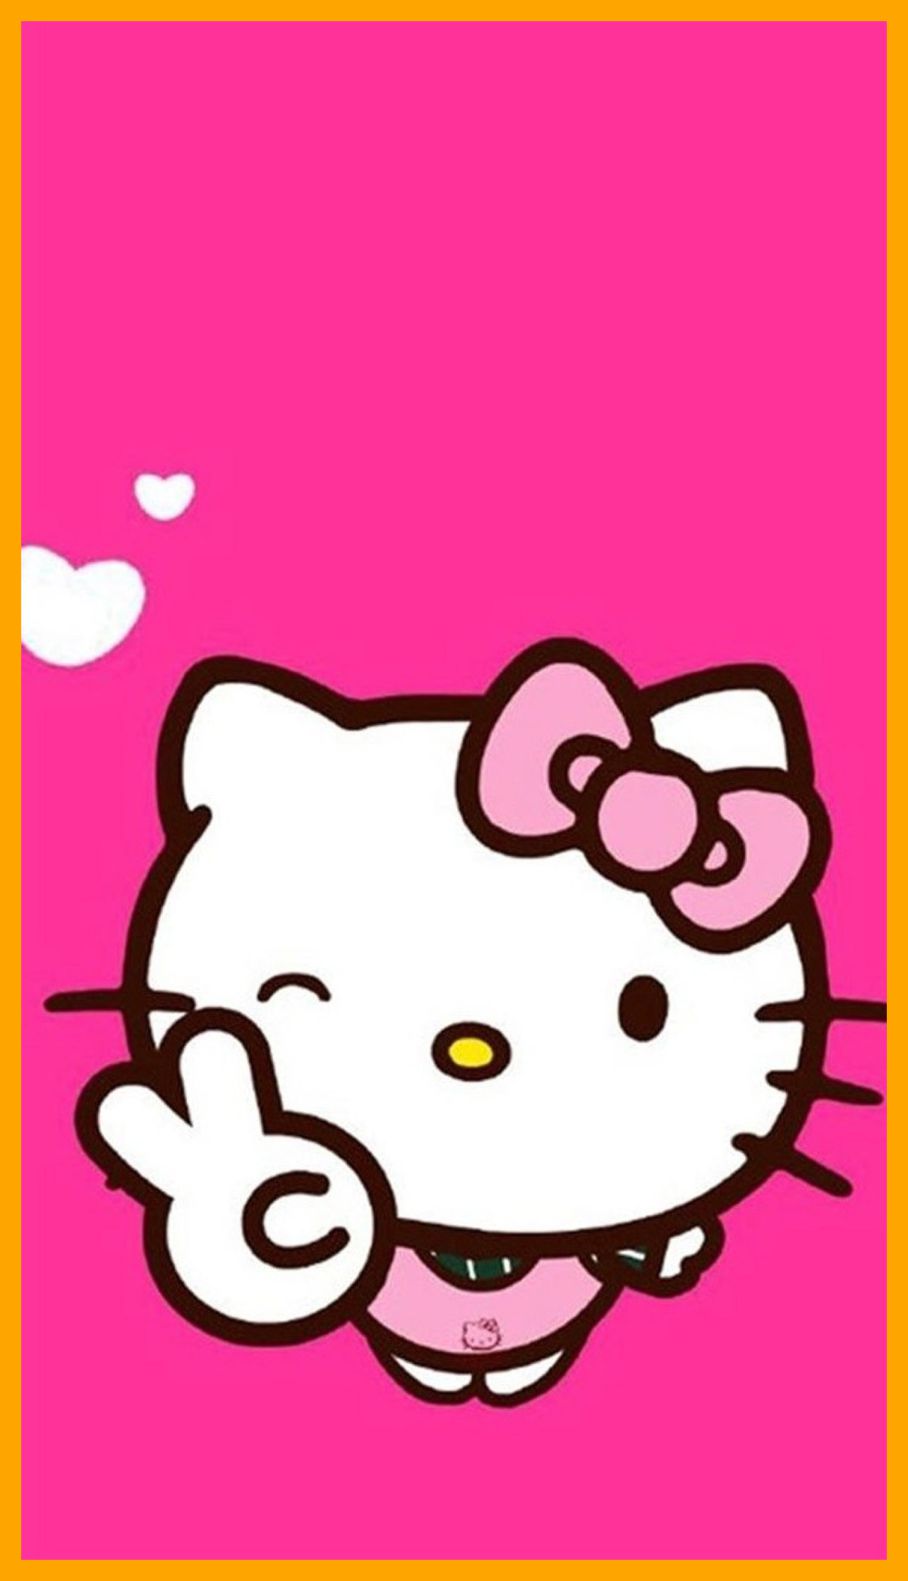 Hình nền Hello Kitty màu hồng xinh xắn và đáng yêu sẽ làm đẹp cho màn hình điện thoại của bạn. Hãy cập nhật những bức hình độc đáo này với chất lượng cao!